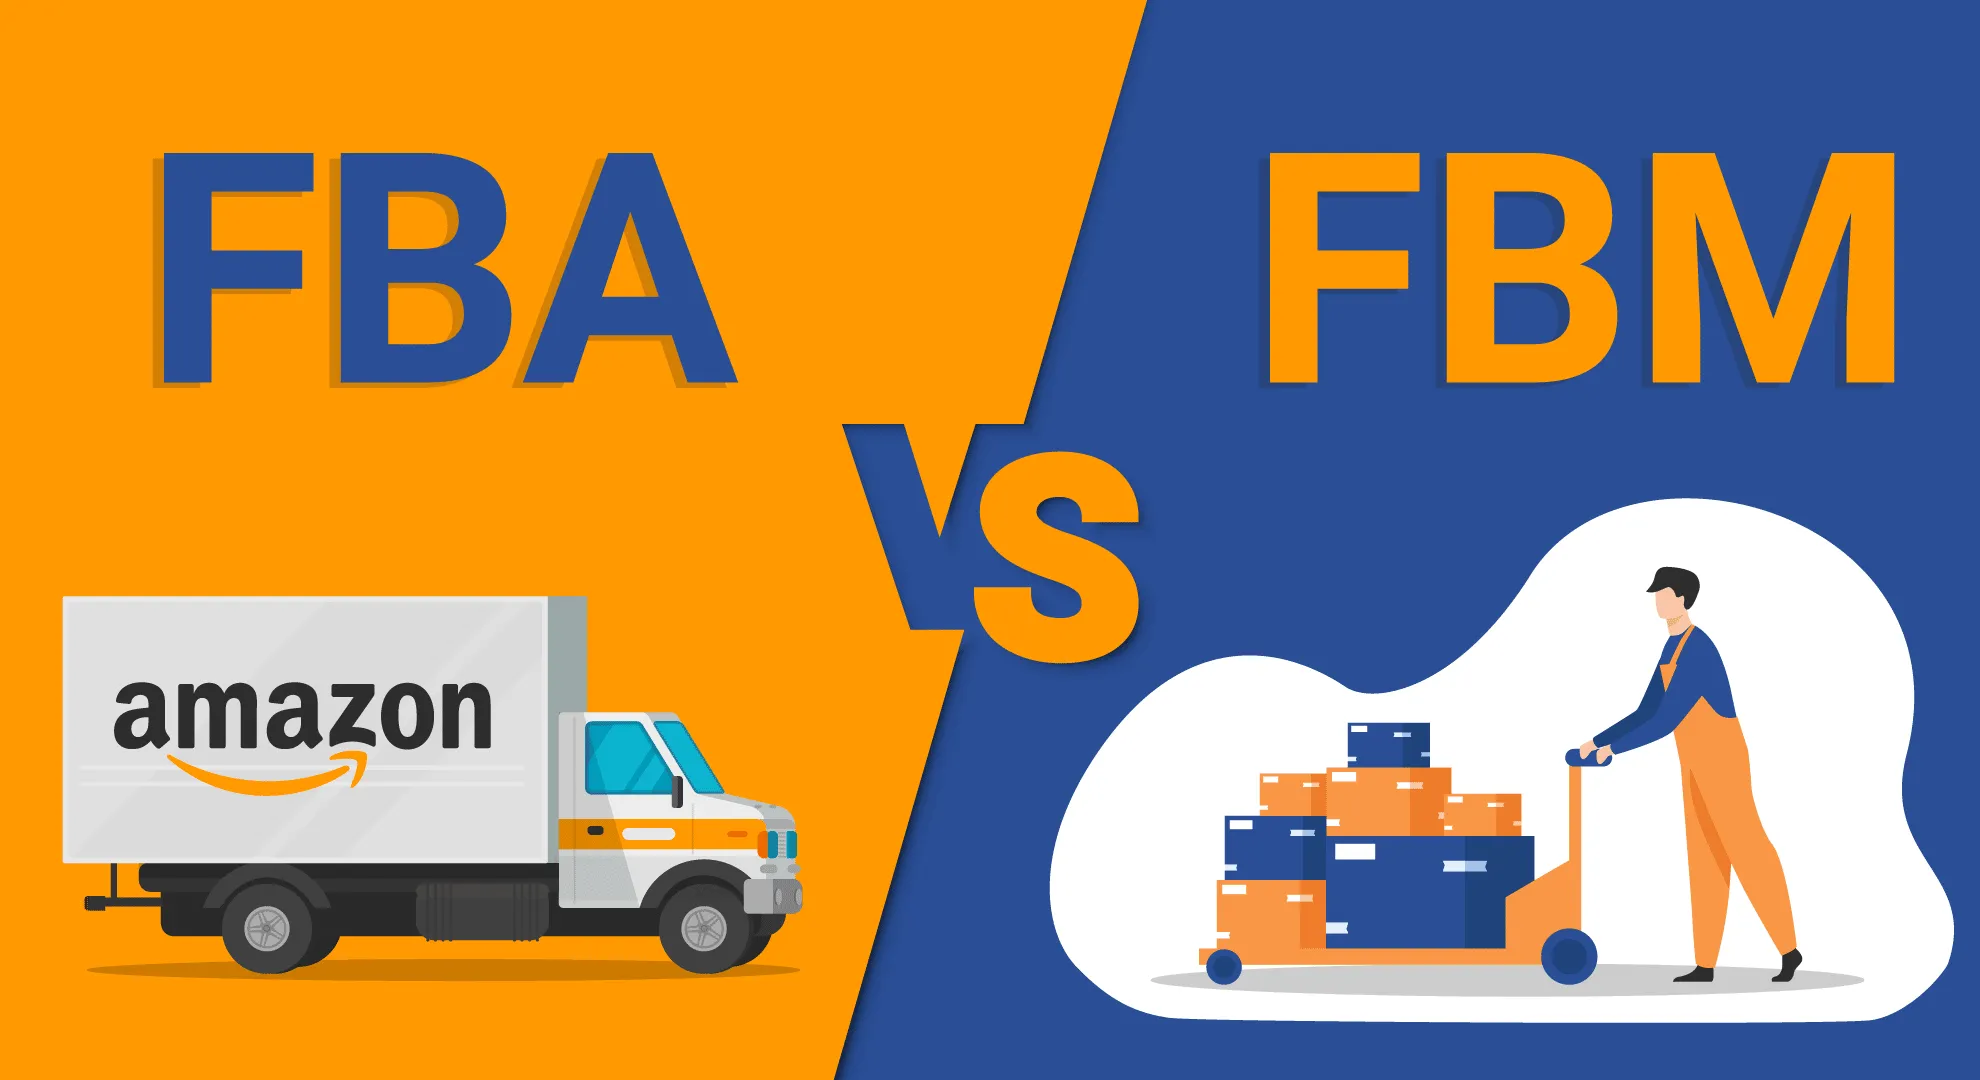 Meglio Amazon FBA o Amazon FBM?